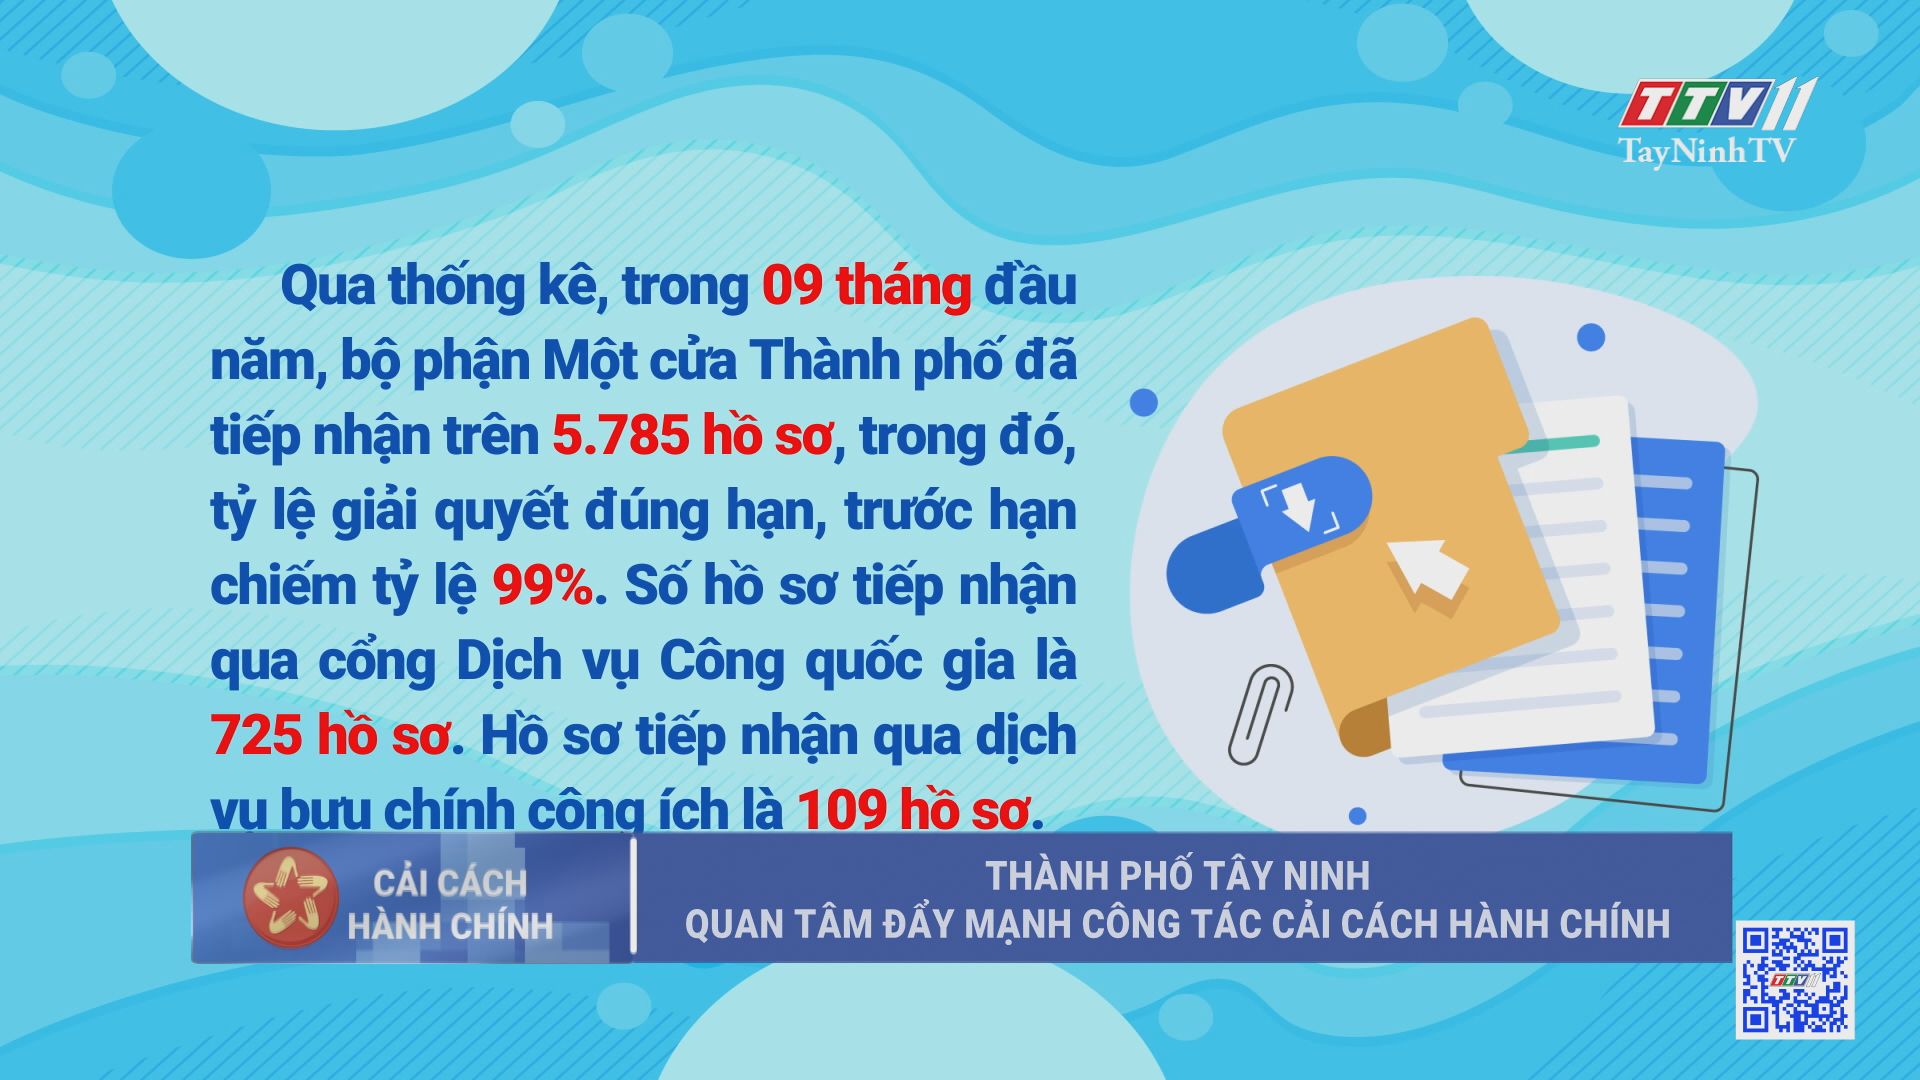 Thành phố Tây Ninh quan tâm đẩy mạnh công tác cải cách hành chính | TayNinhTV